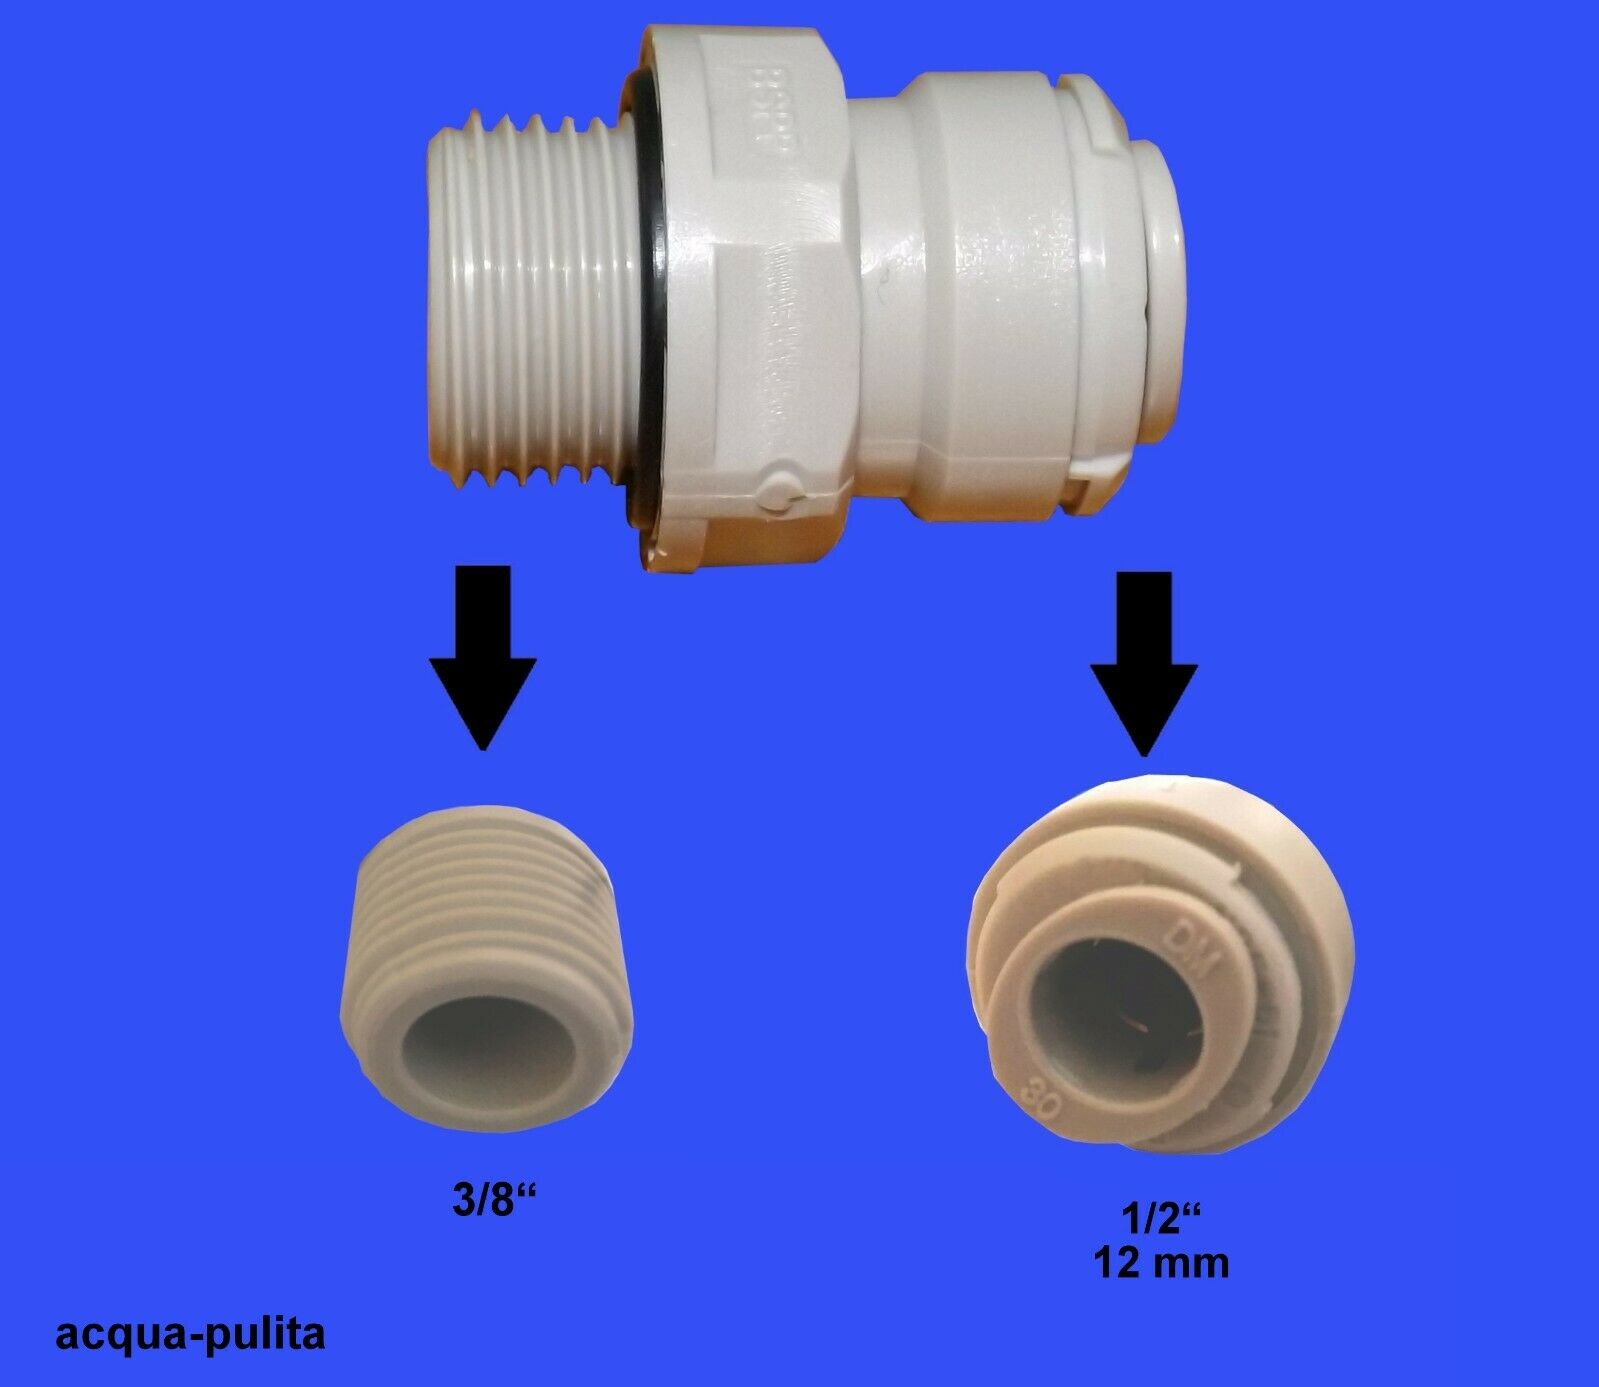 Raccordo filettatura 3/8" x 1/2" (tubo 12 mm) per acqua